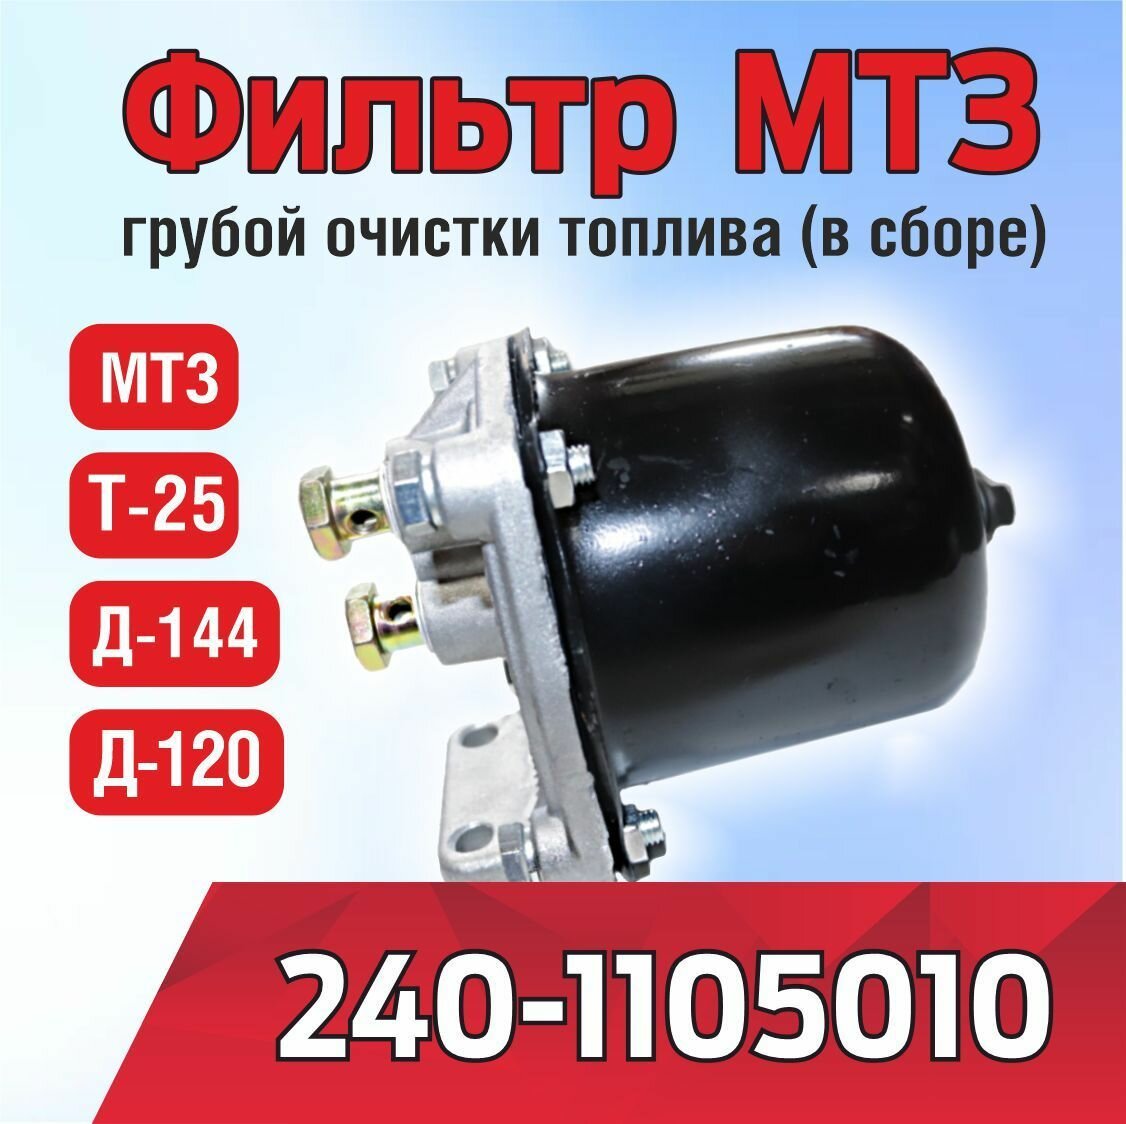 Фильтр 240-1105010 МТЗ, Д-120, Д-144, Т-25 грубой очистки топлива в сборе (металл)